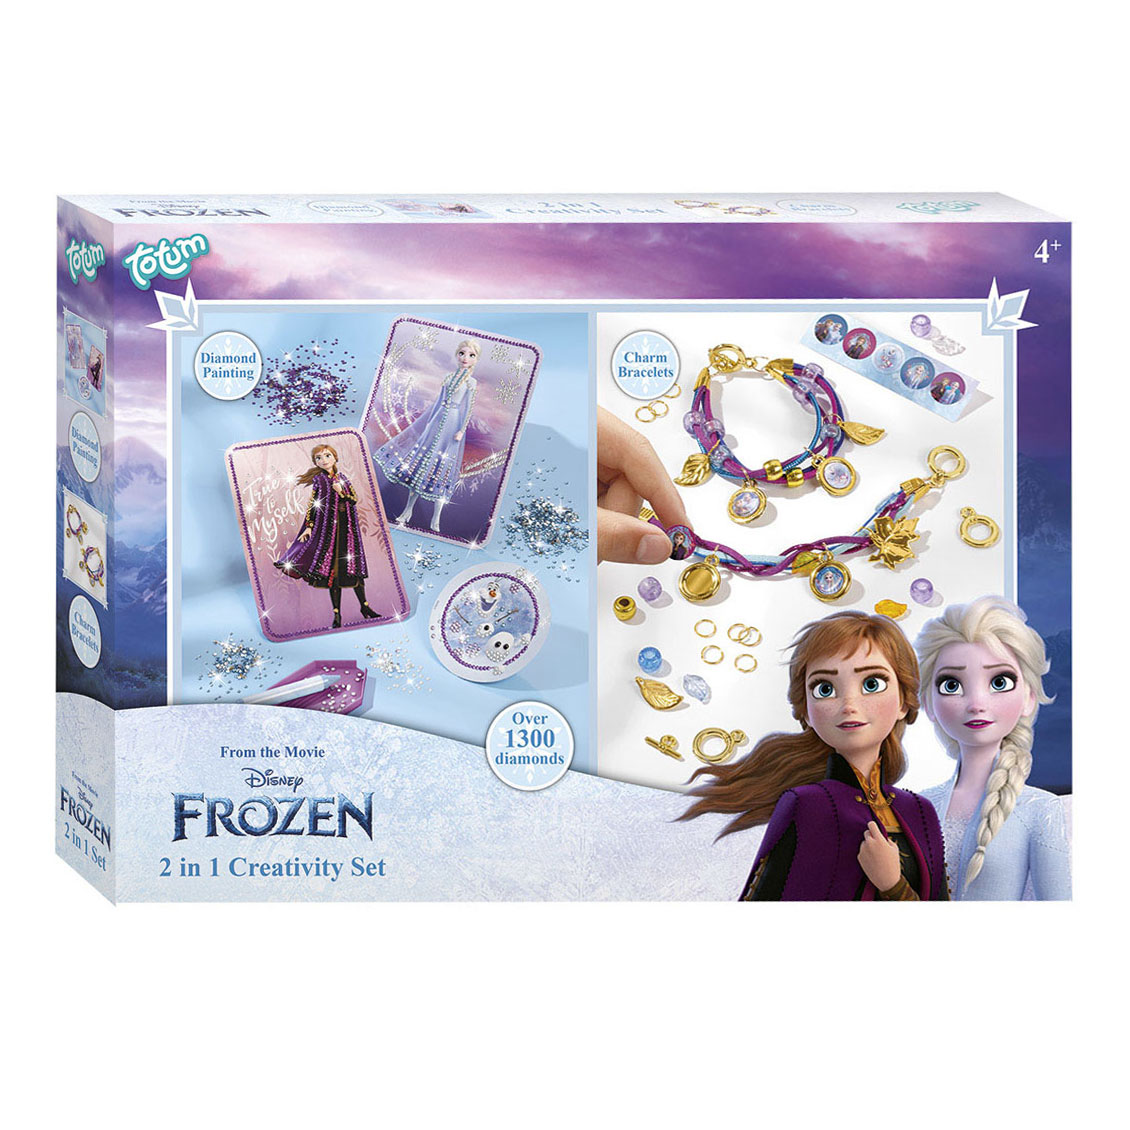 Totum Disney Frozen knutselen 2 in 1 set fashion armbandjes maken en diamond painting glitter kaarten 2 activiteiten